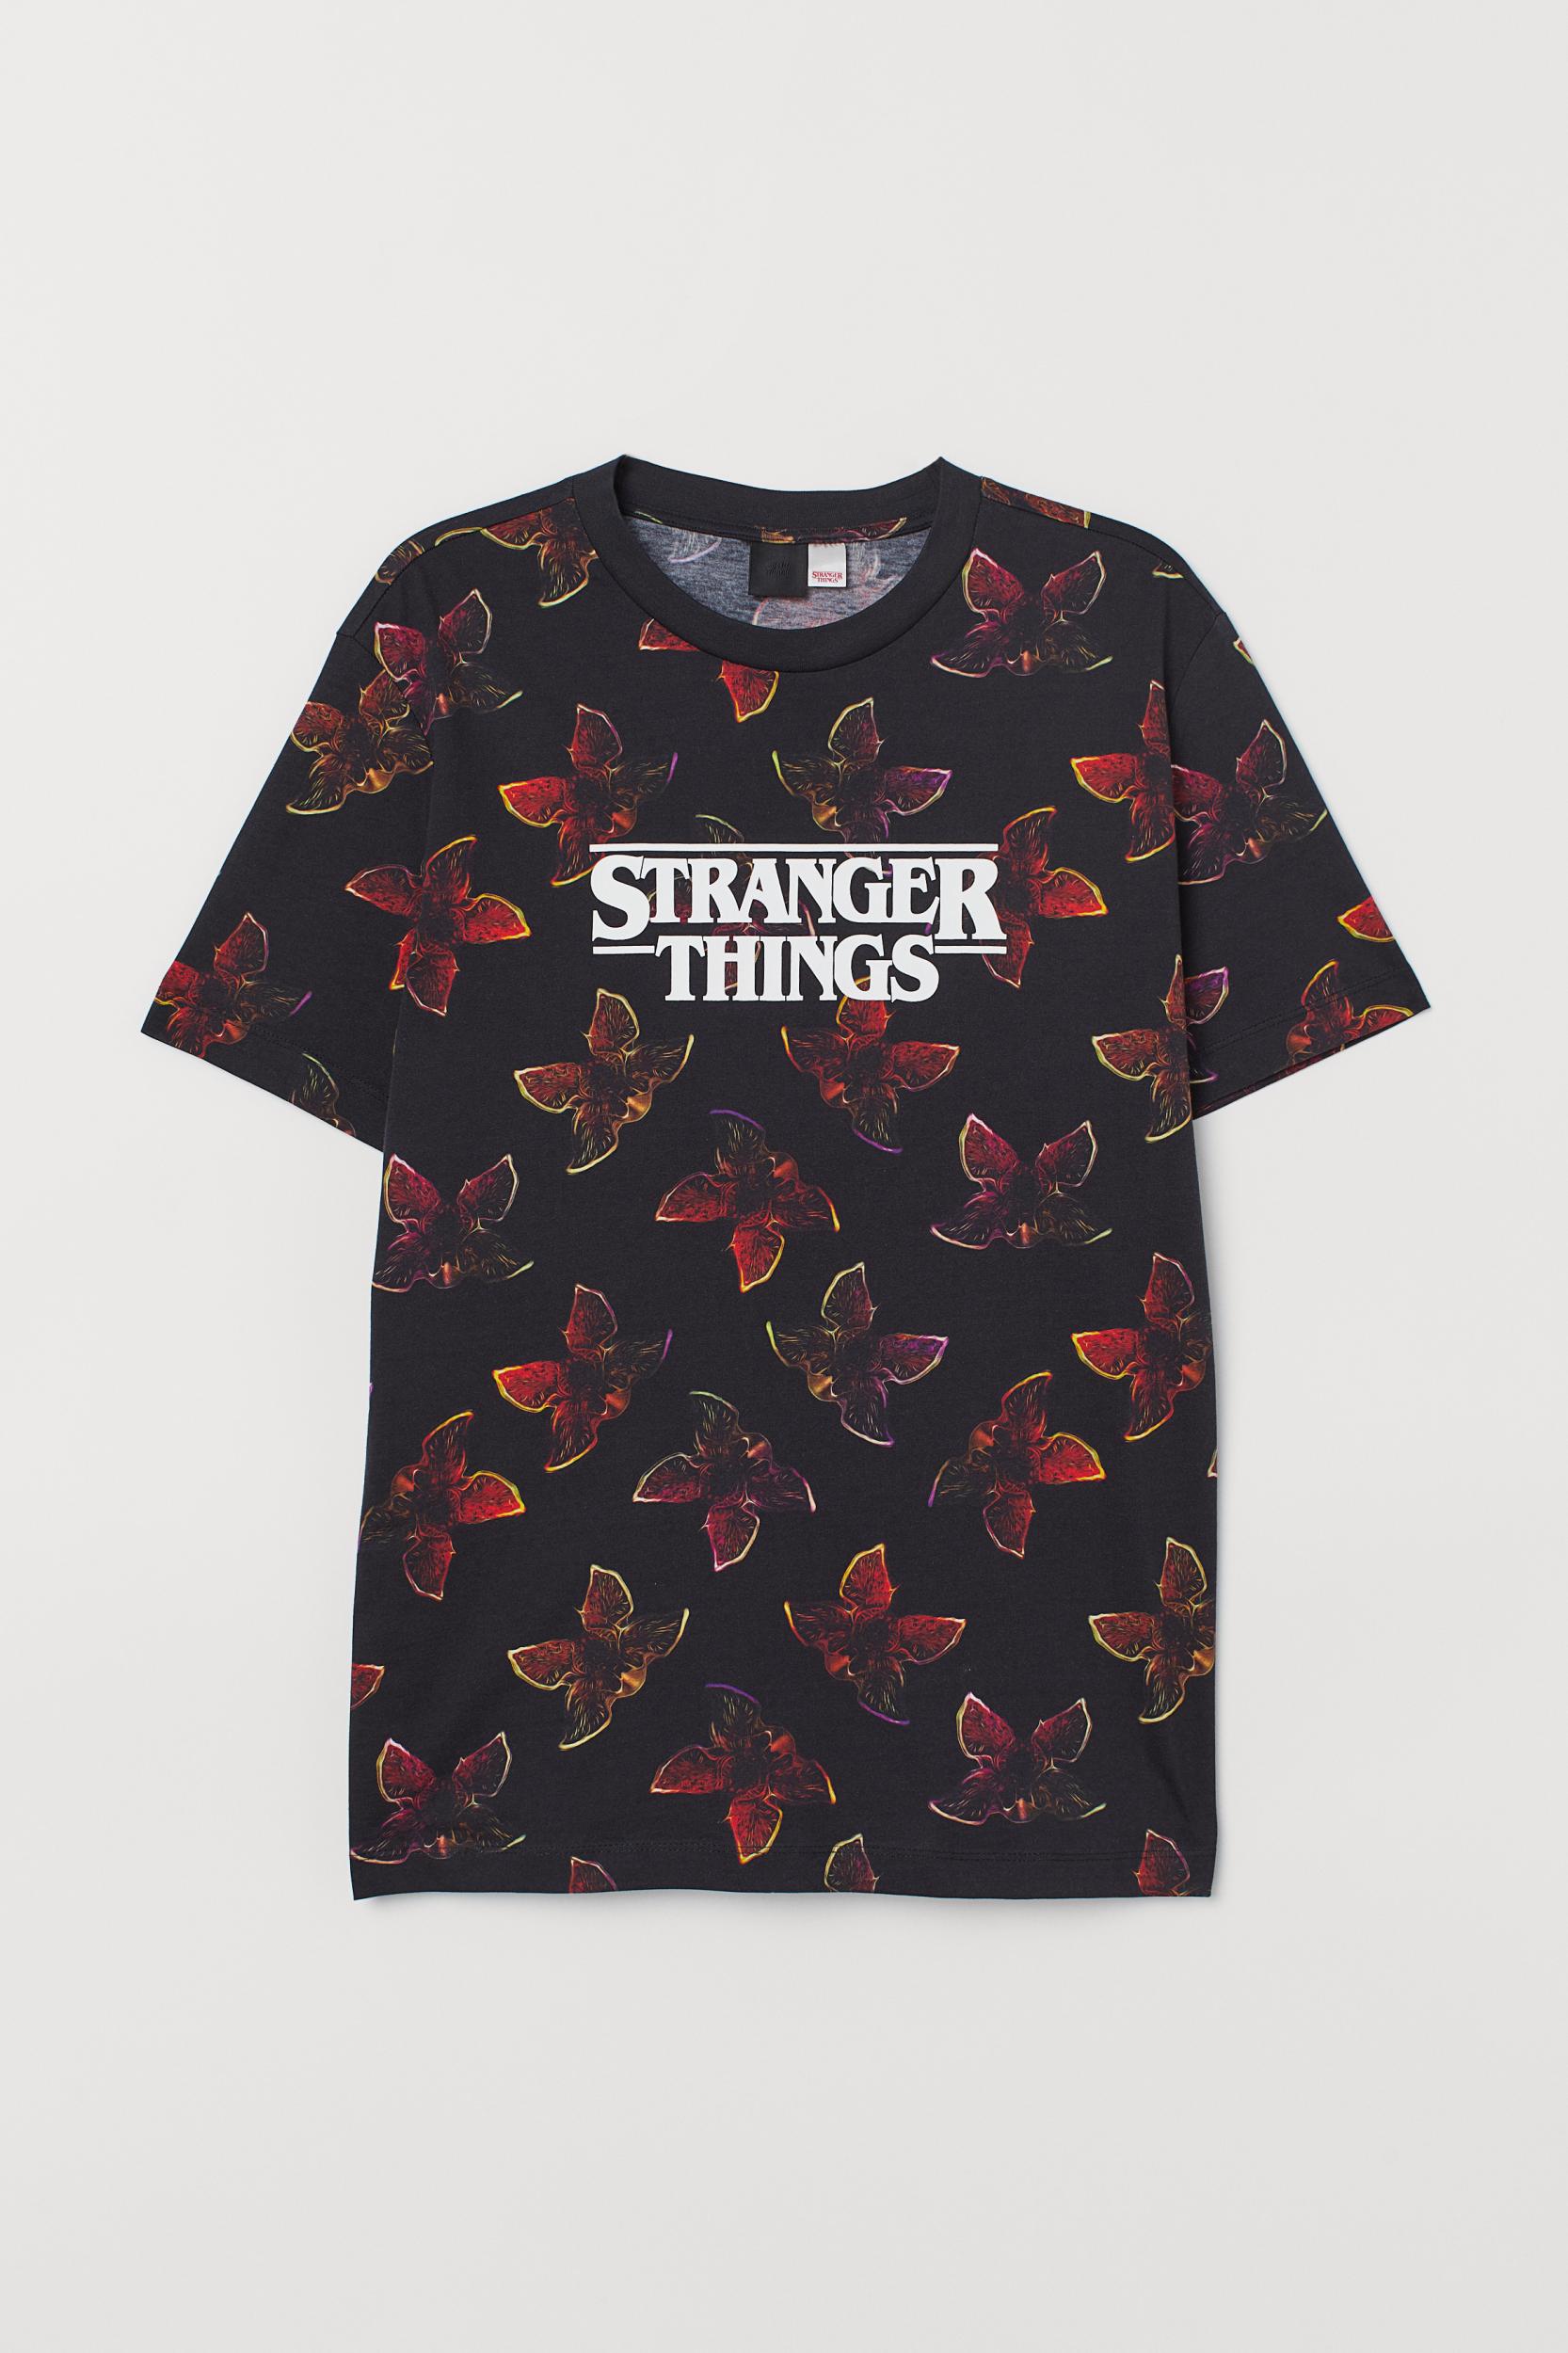 Buy > hoodie stranger things h&m > in stock